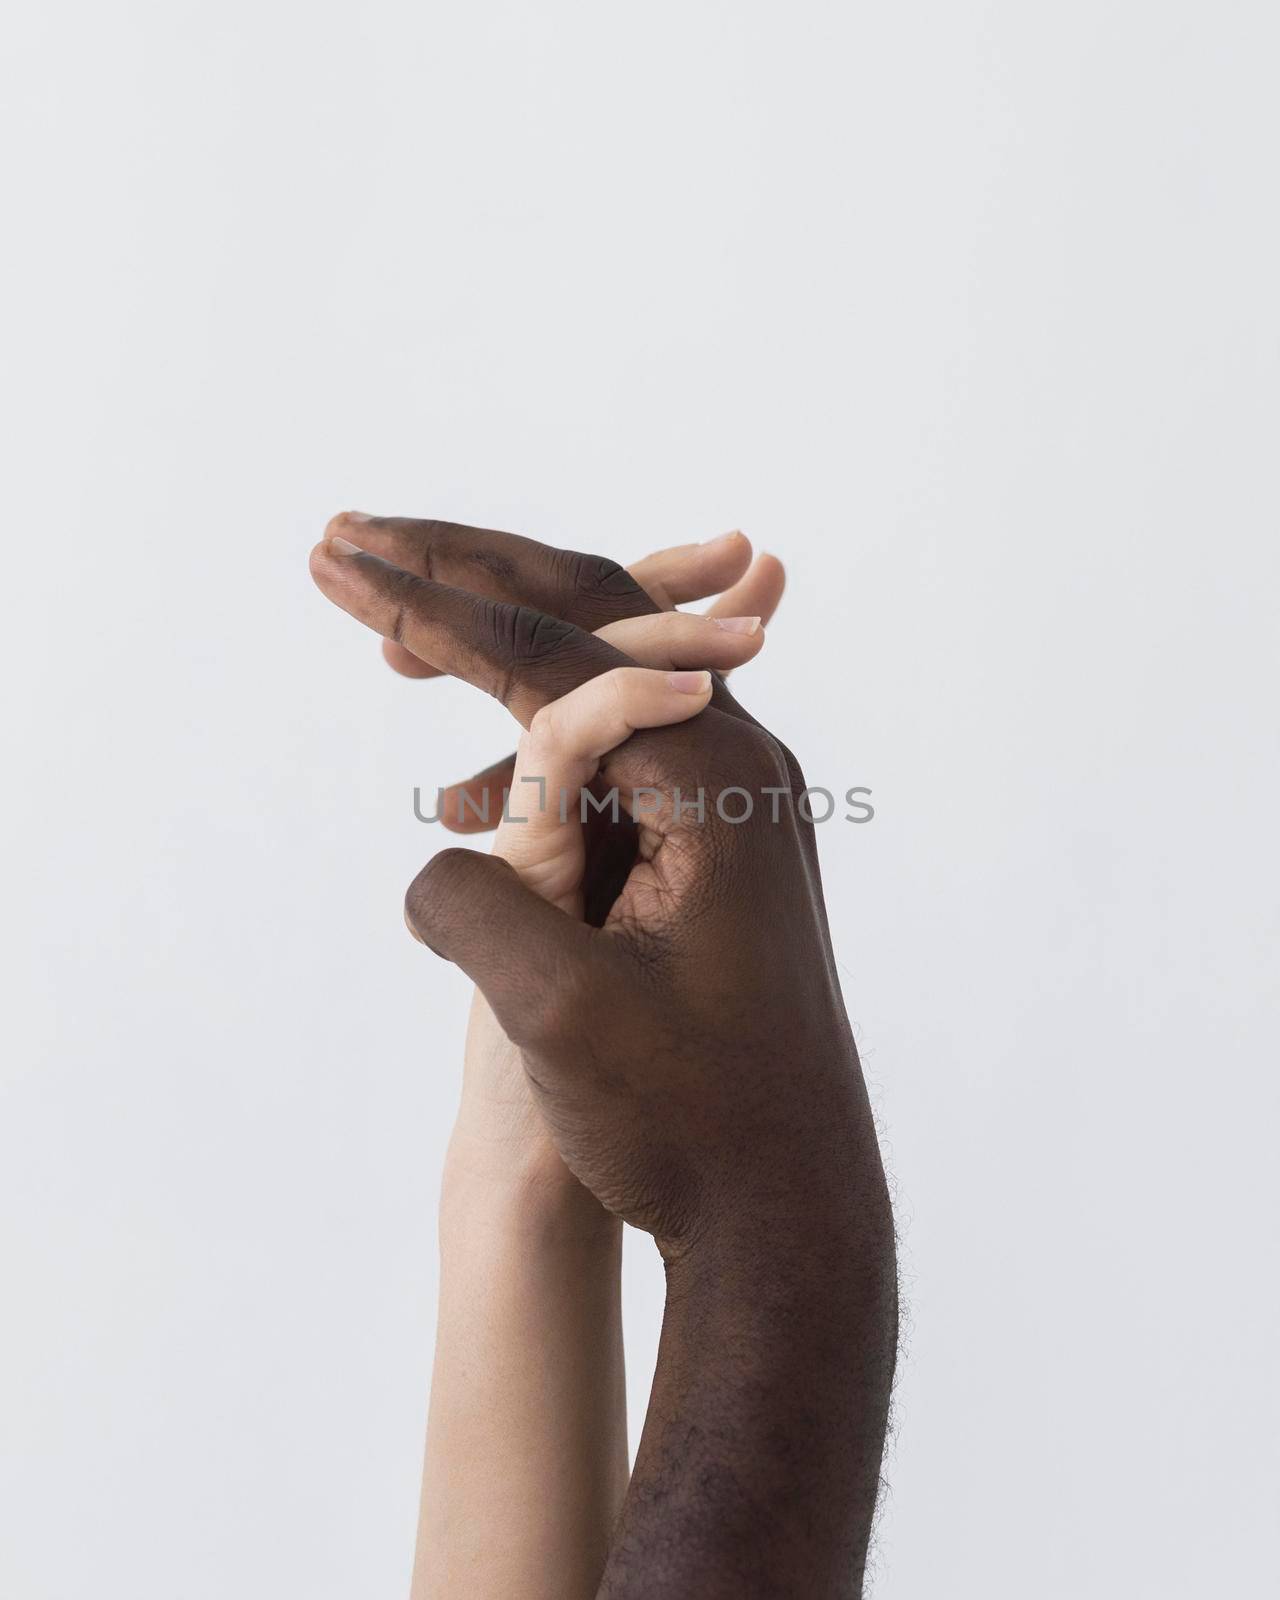 black white hands holding sideways by Zahard